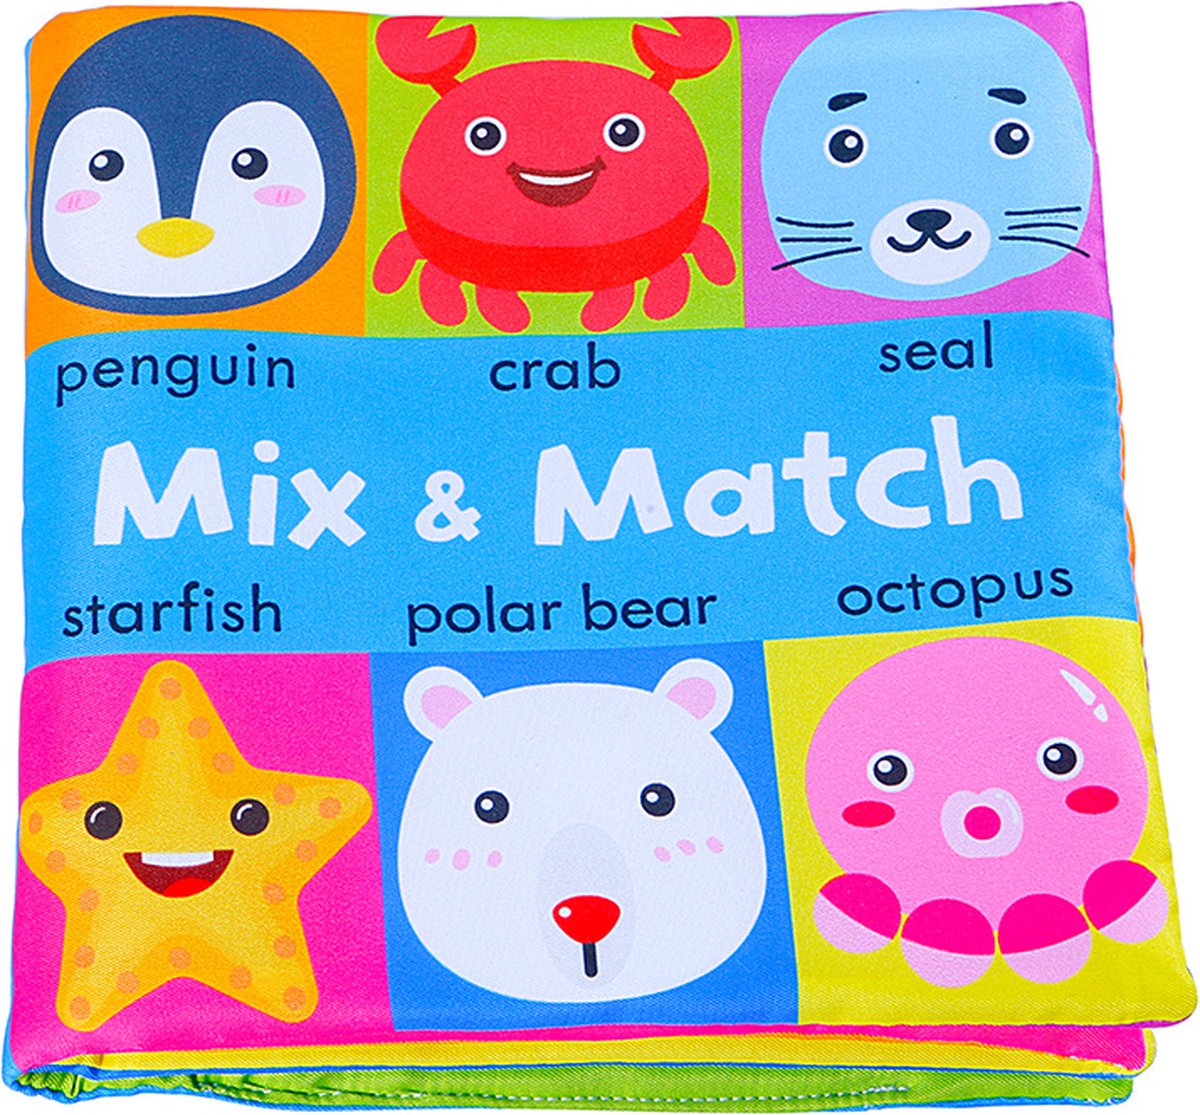 Baby speelgoed/knisperboekje /Educatief Baby Speelgoed /Zacht Baby boek /Zacht Speelgoed/Speelgoed voor baby/ face matching boek/ Mix & Match Ocean Animals